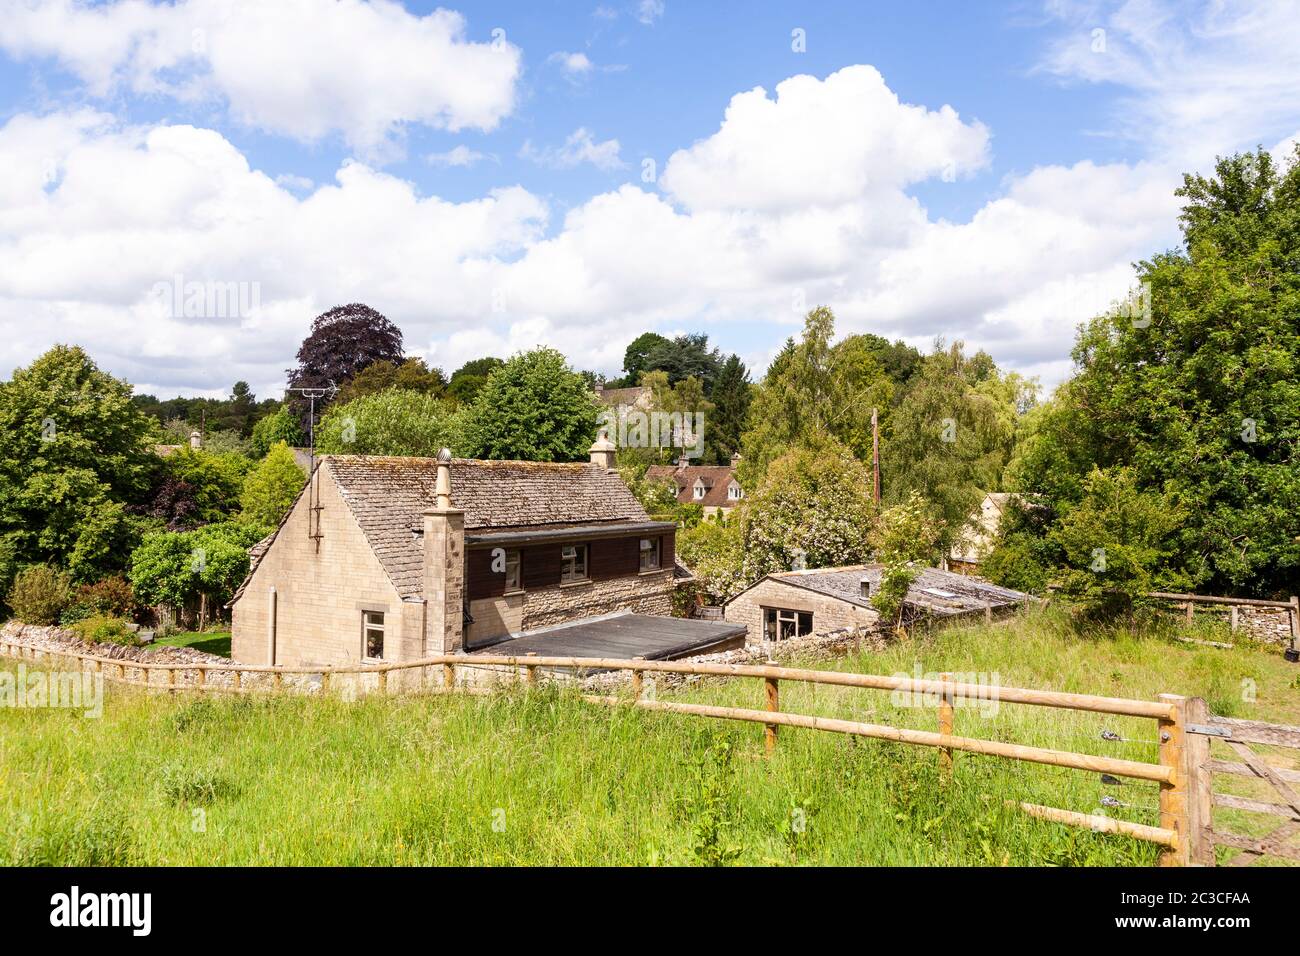 The Cotswold village of Duntisbourne Rouse, Gloucestershire UK Stock Photo